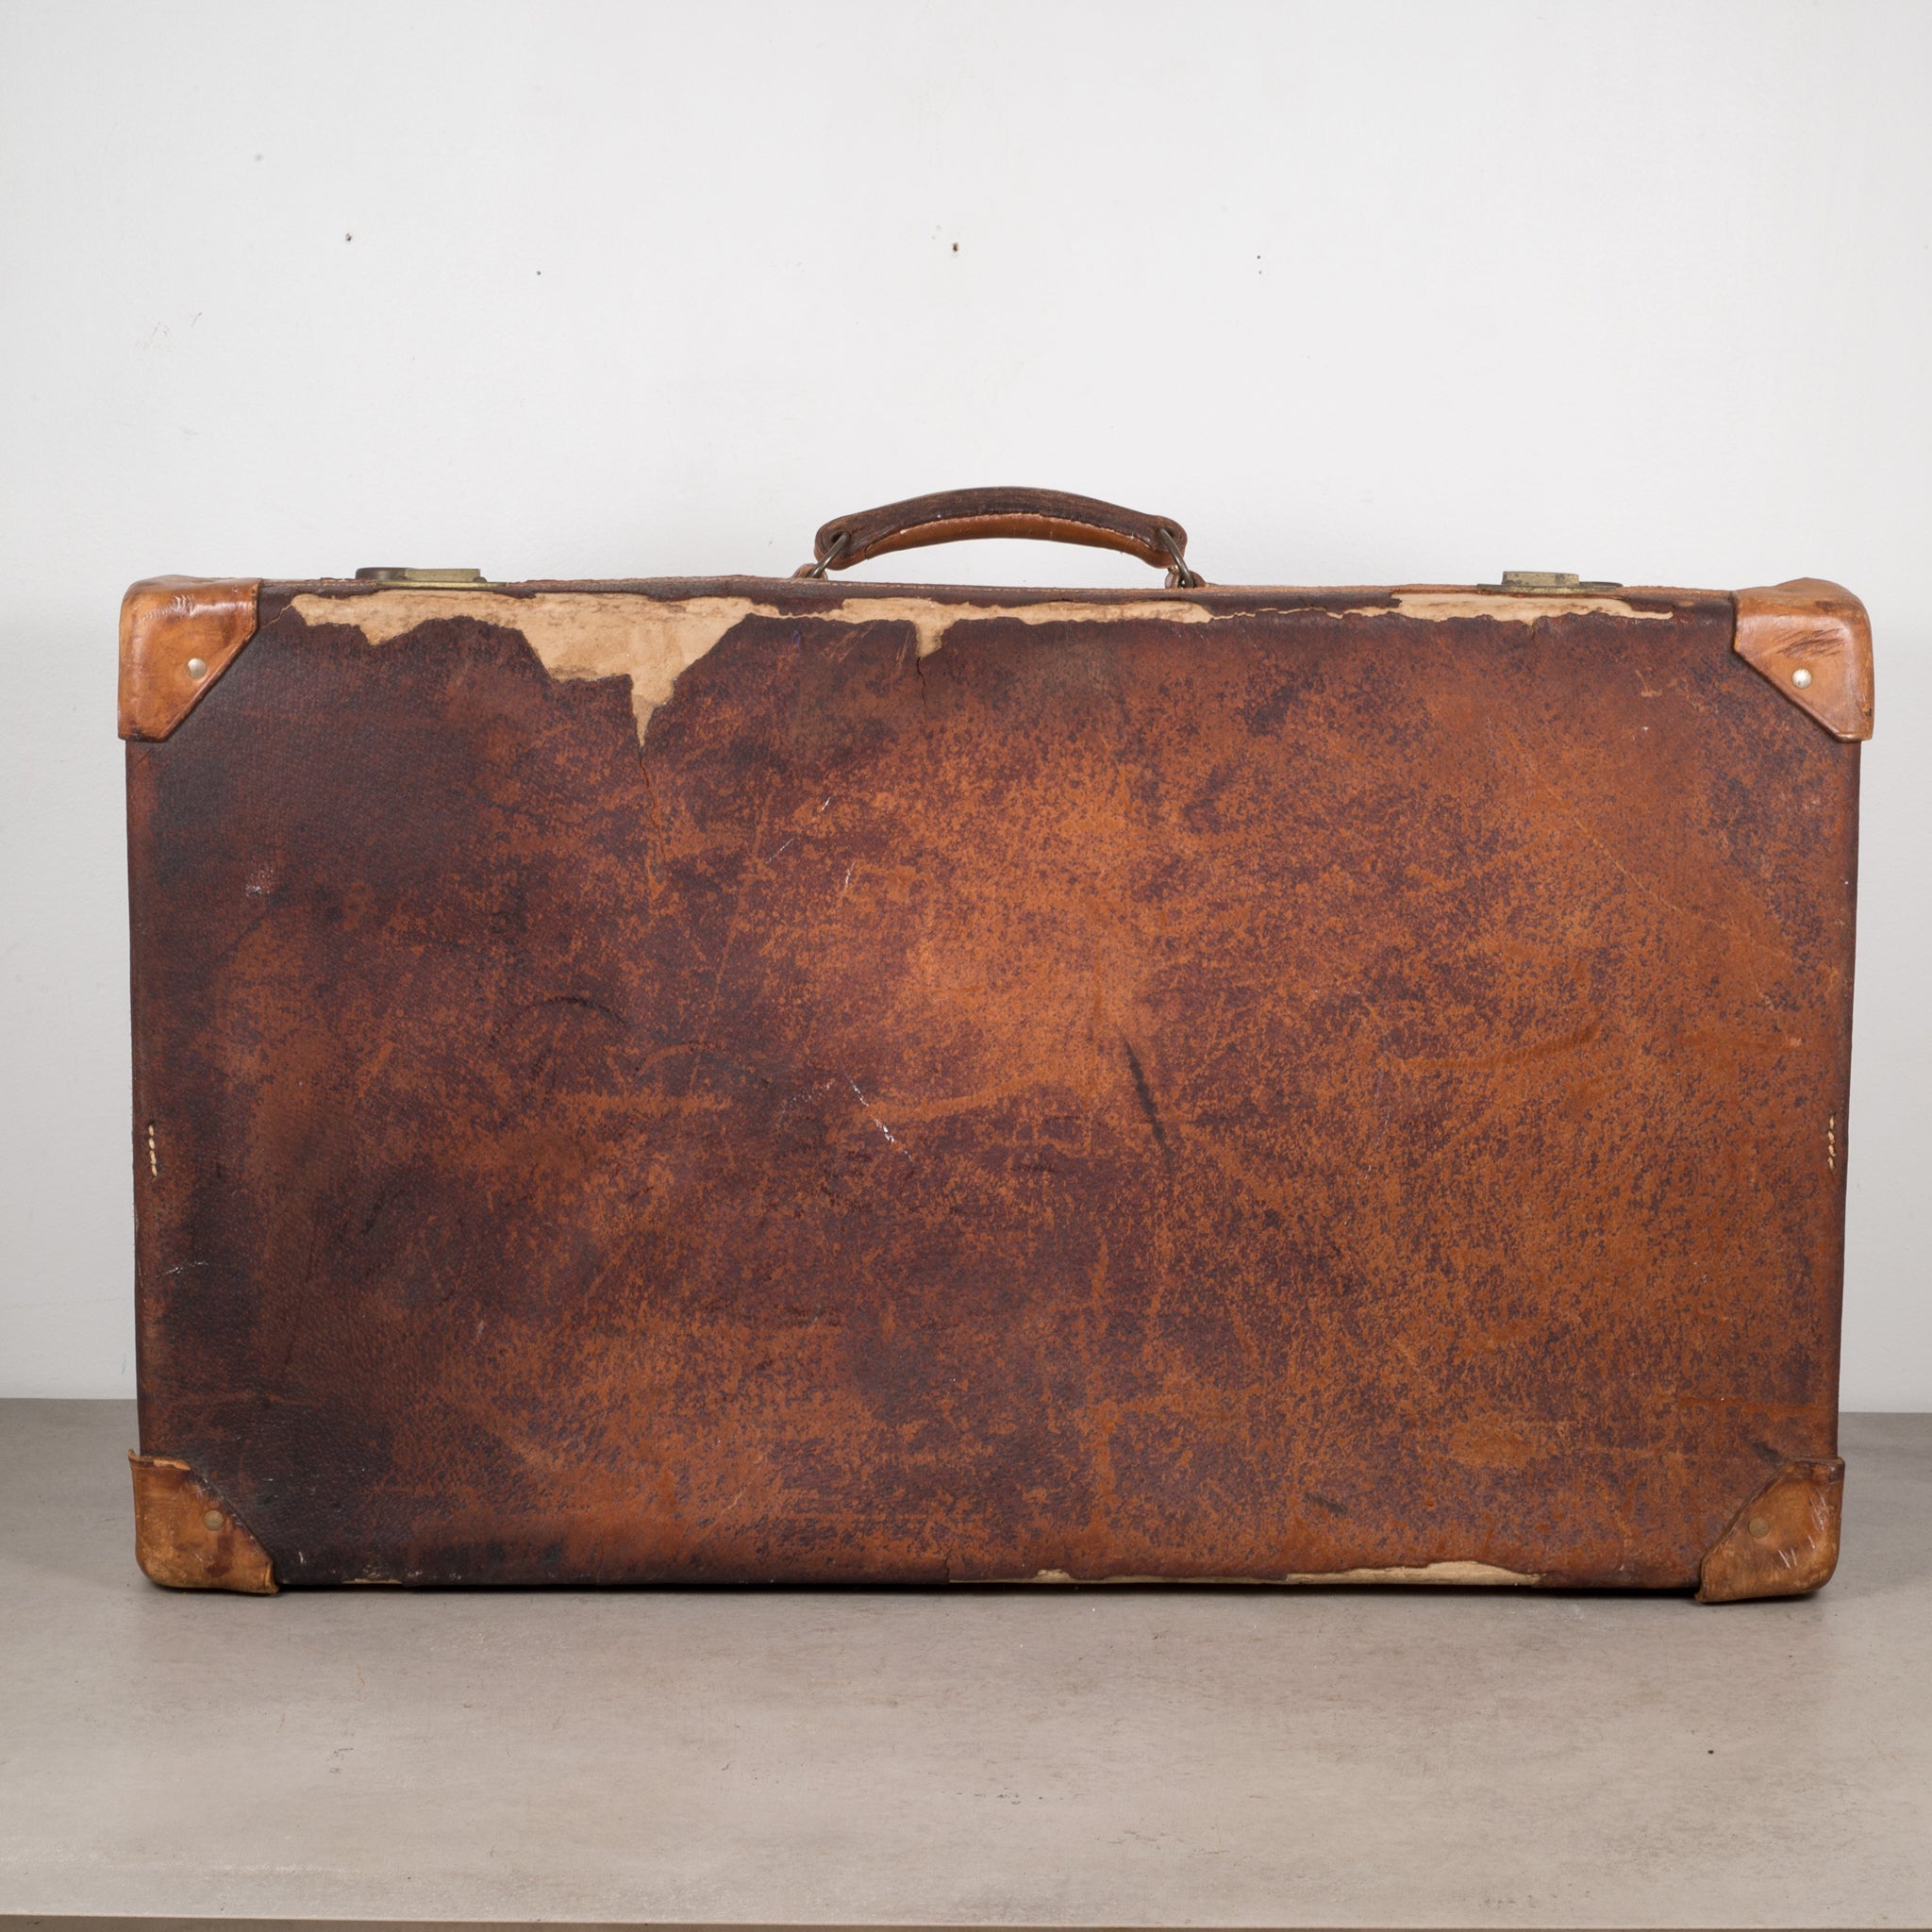 Pair 1940 Vintage Leather Trim Suitcases, Yale Locks, Oshkosh Luggage